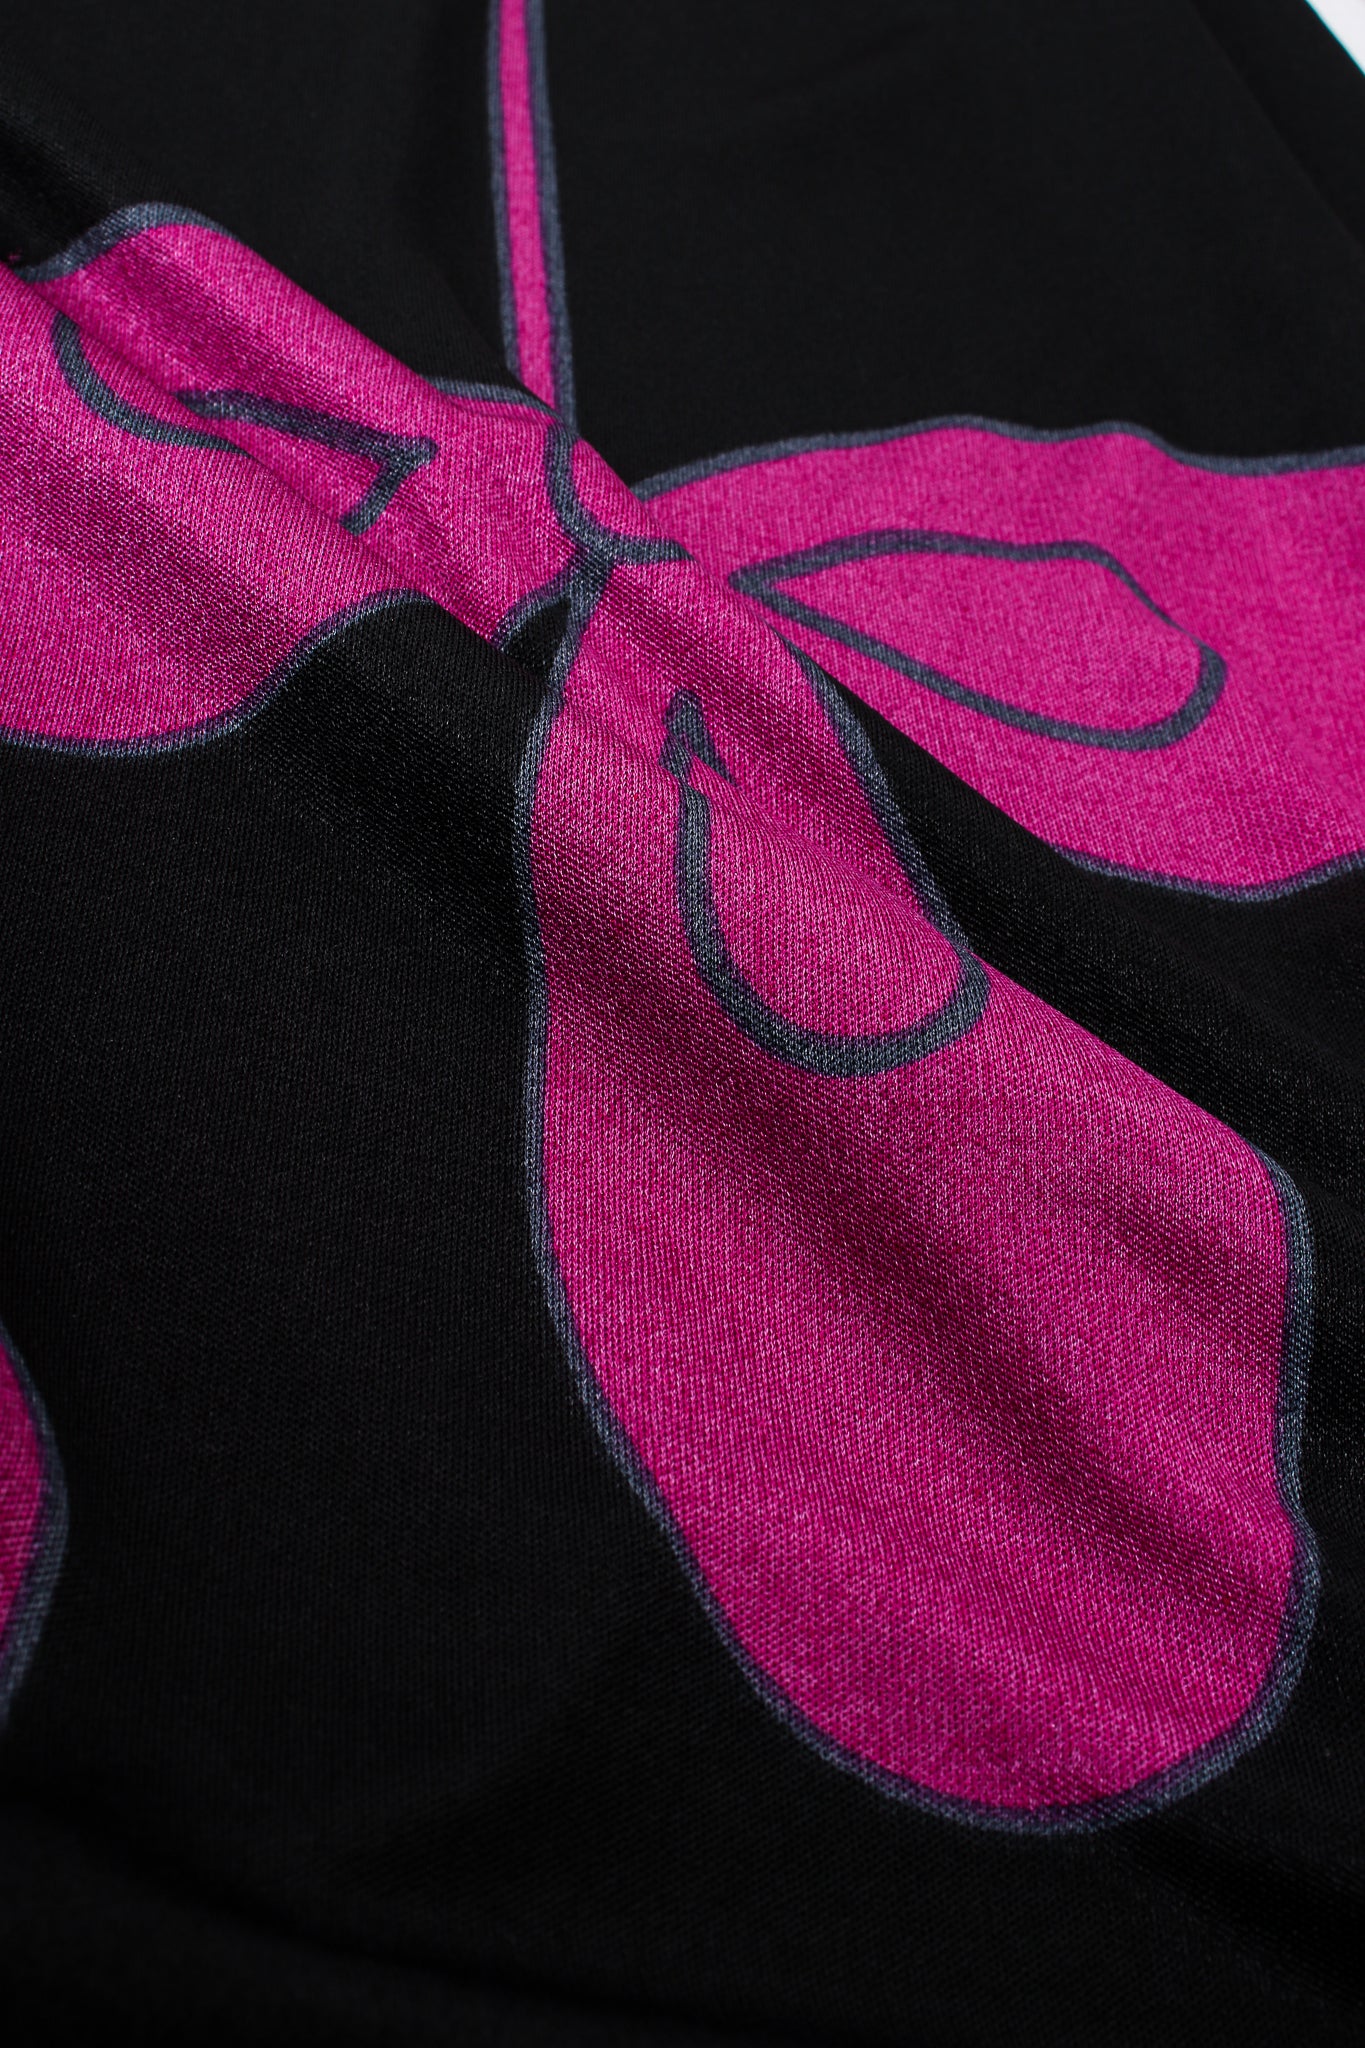 Vintage Louis Feraud Ombré Floral Jersey Dress fabric print detail at Recess Los Angeles